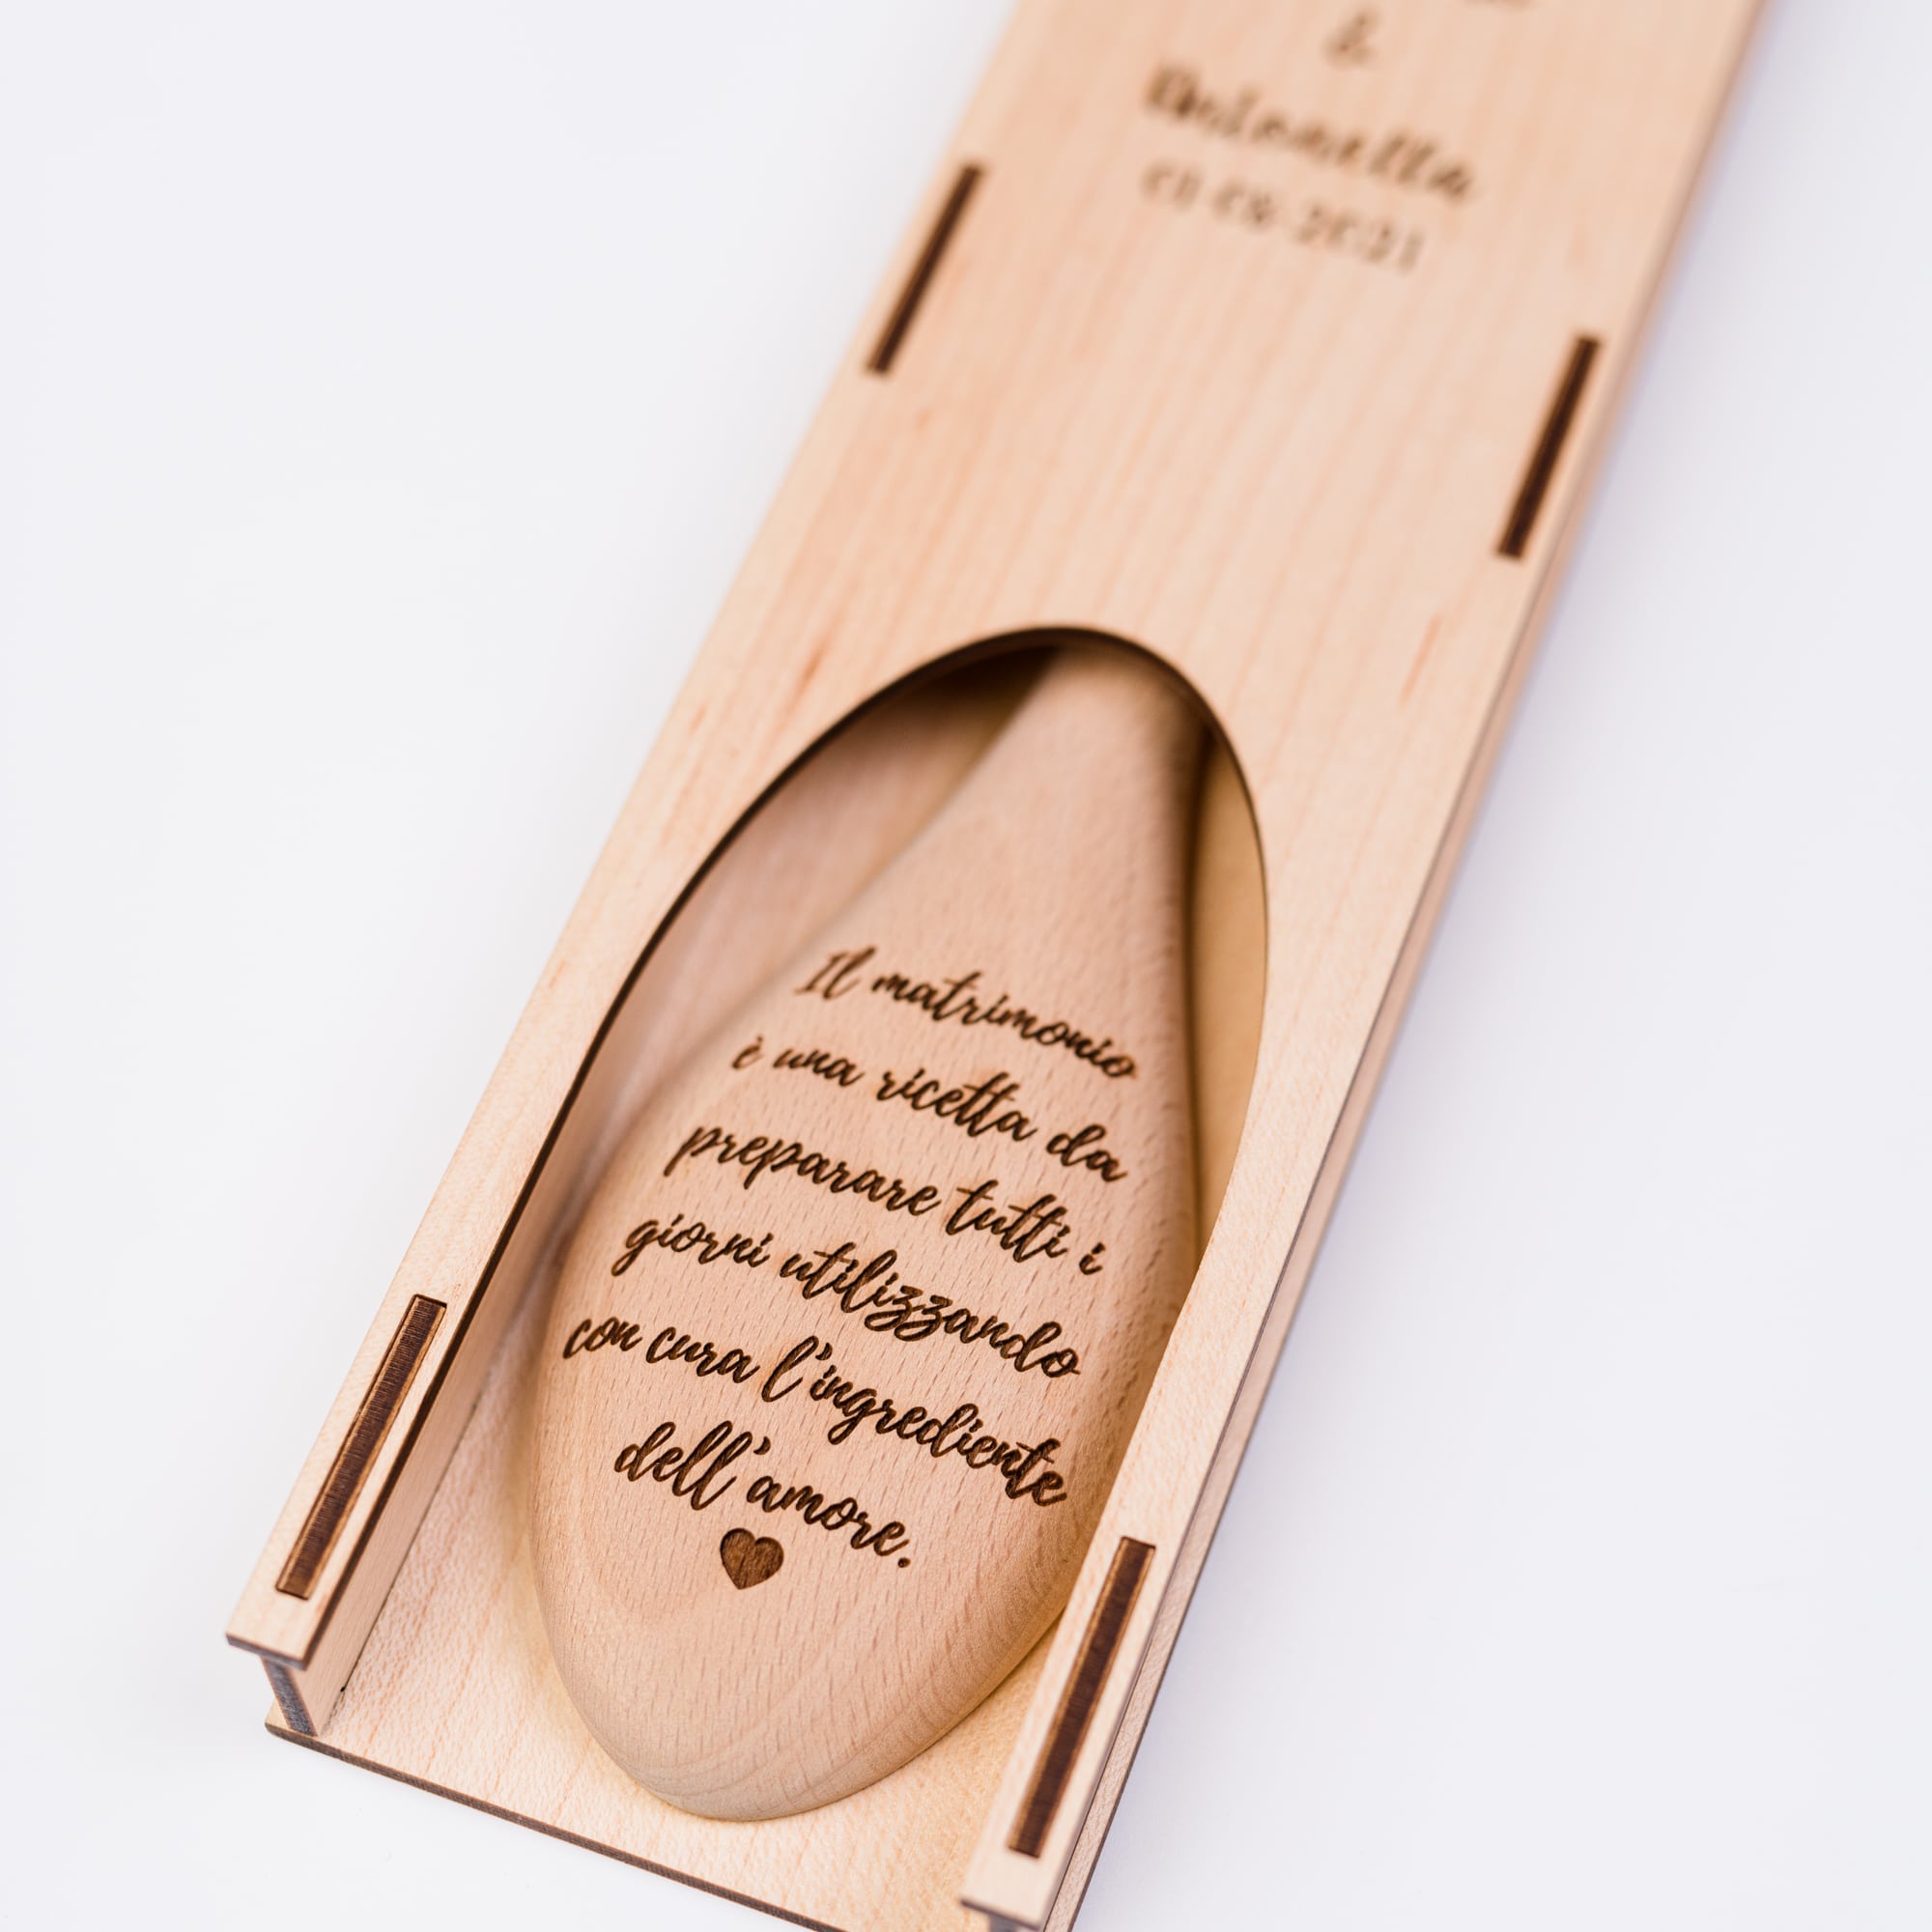 Cucchiarella e custodia in legno con incisione per matrimonio